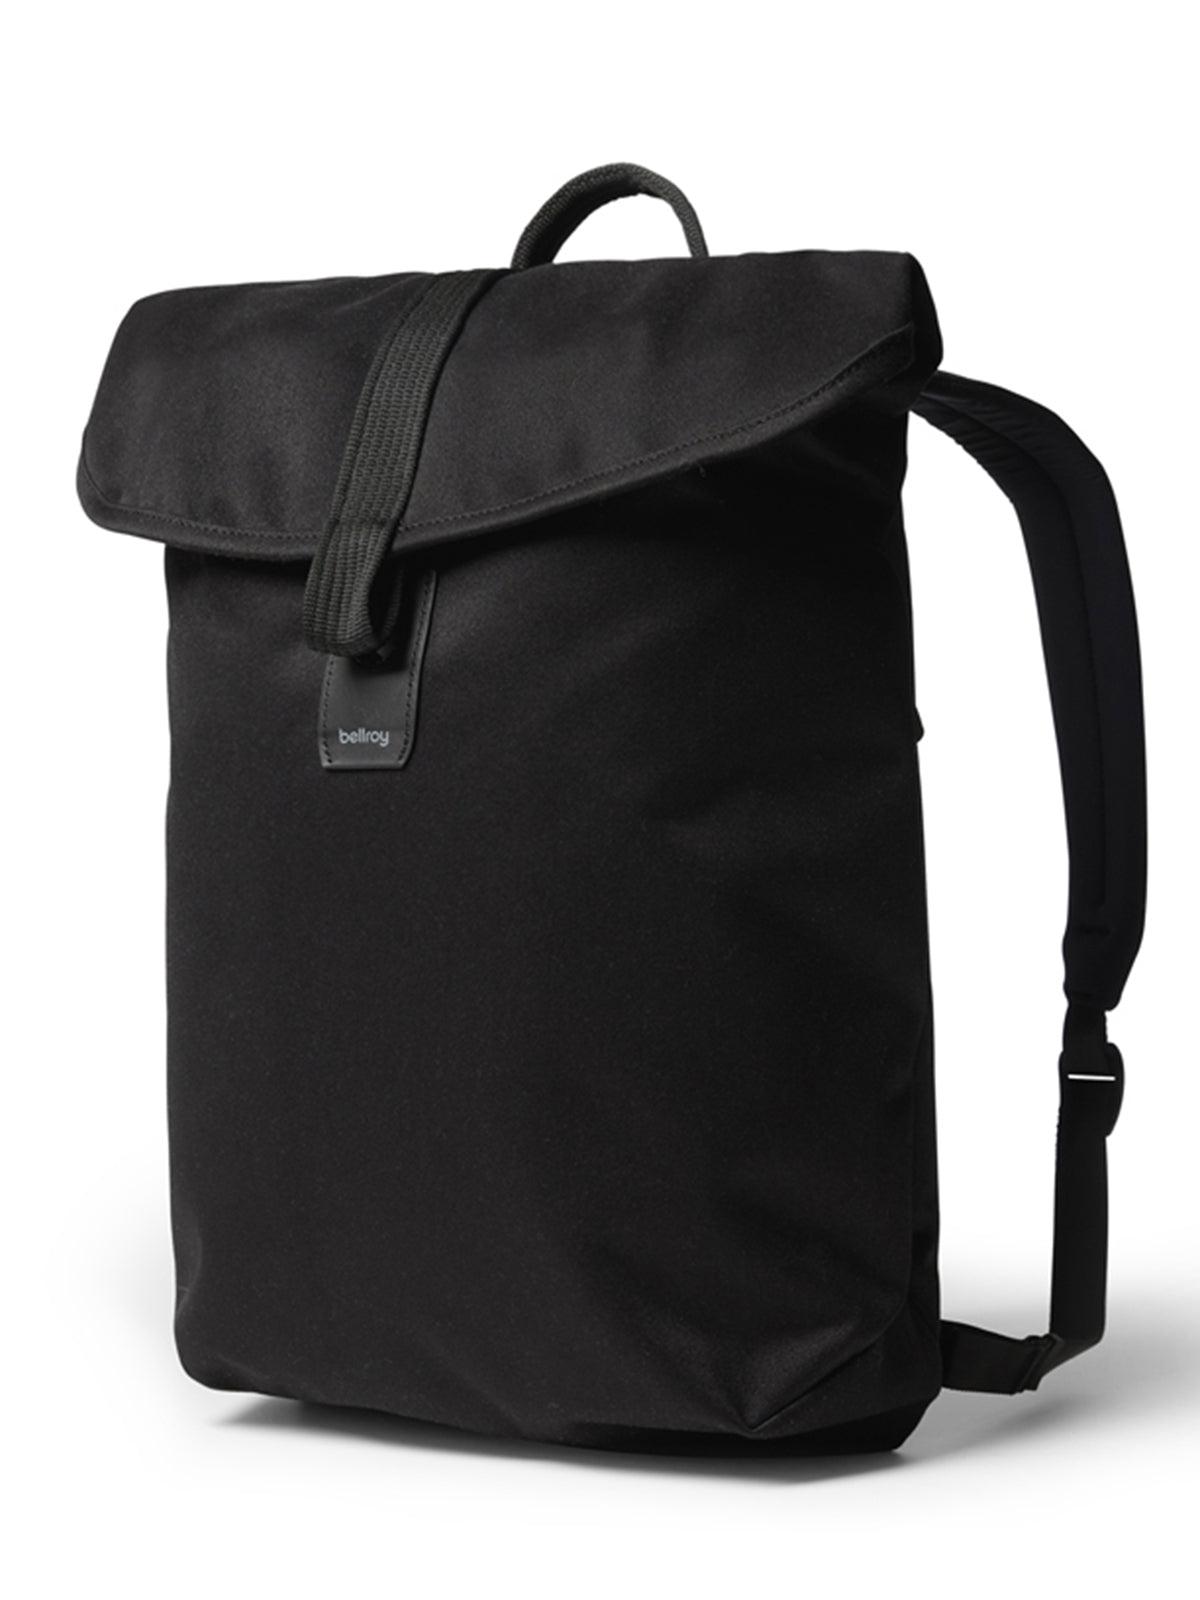 Bellroy Oslo Backpack Melbourne Black